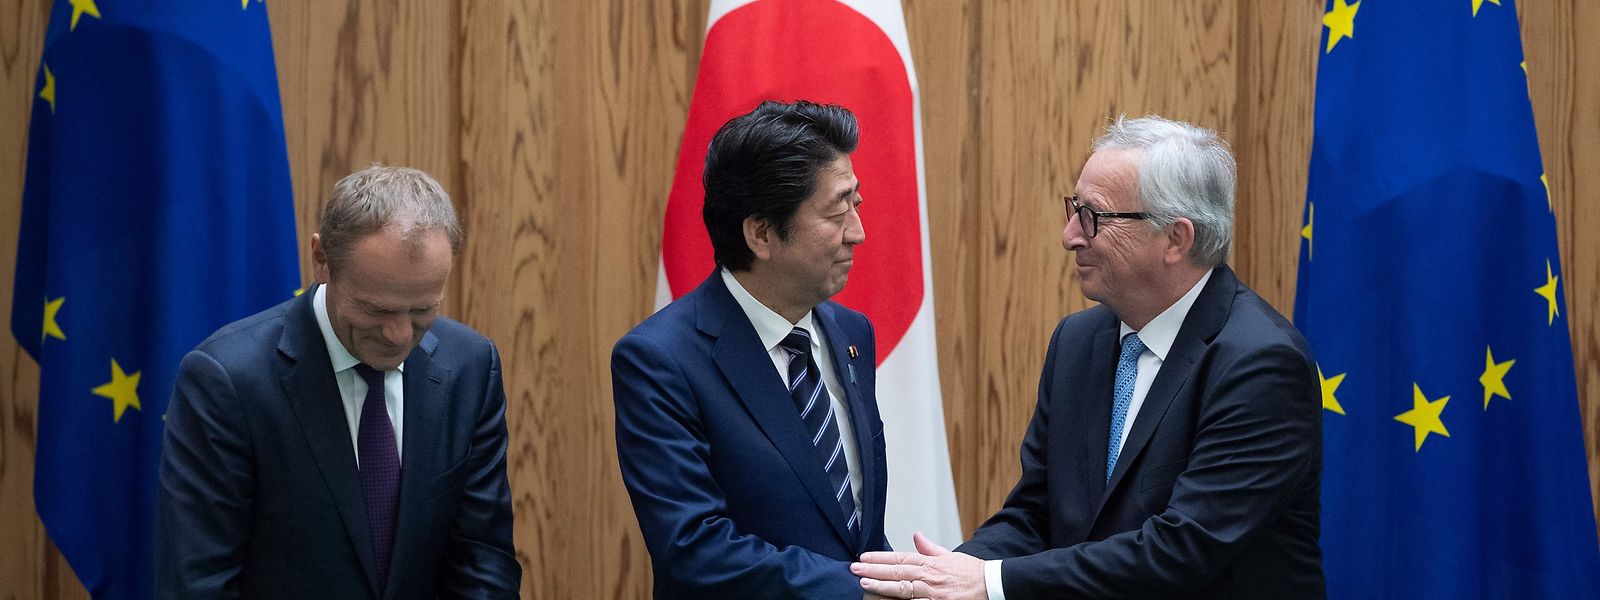 Donald Tusk, Shinzo Abe und Jean-Claude Juncker (vlnr) freuen sich über das Abkommen.